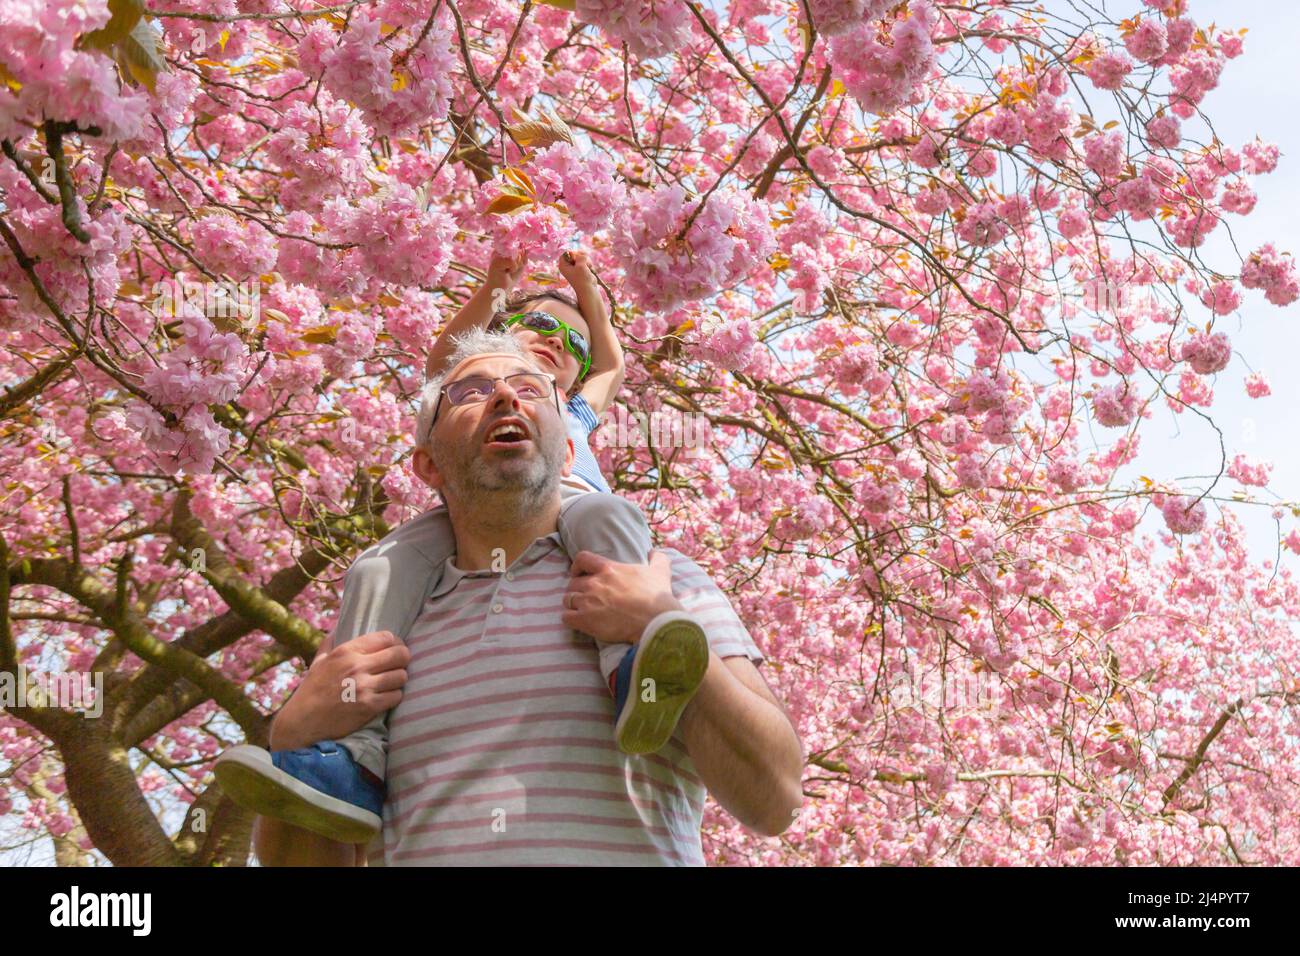 Birmingham, Royaume-Uni. 17th avril 2022. Isaac Stanford, trois ans, se trouve sur les épaules du père Simon pour se rapprocher de la fleur d'arbre rose dans son parc local de Birmingham, au Royaume-Uni. Crédit : Peter Lophan/Alay Live News Banque D'Images